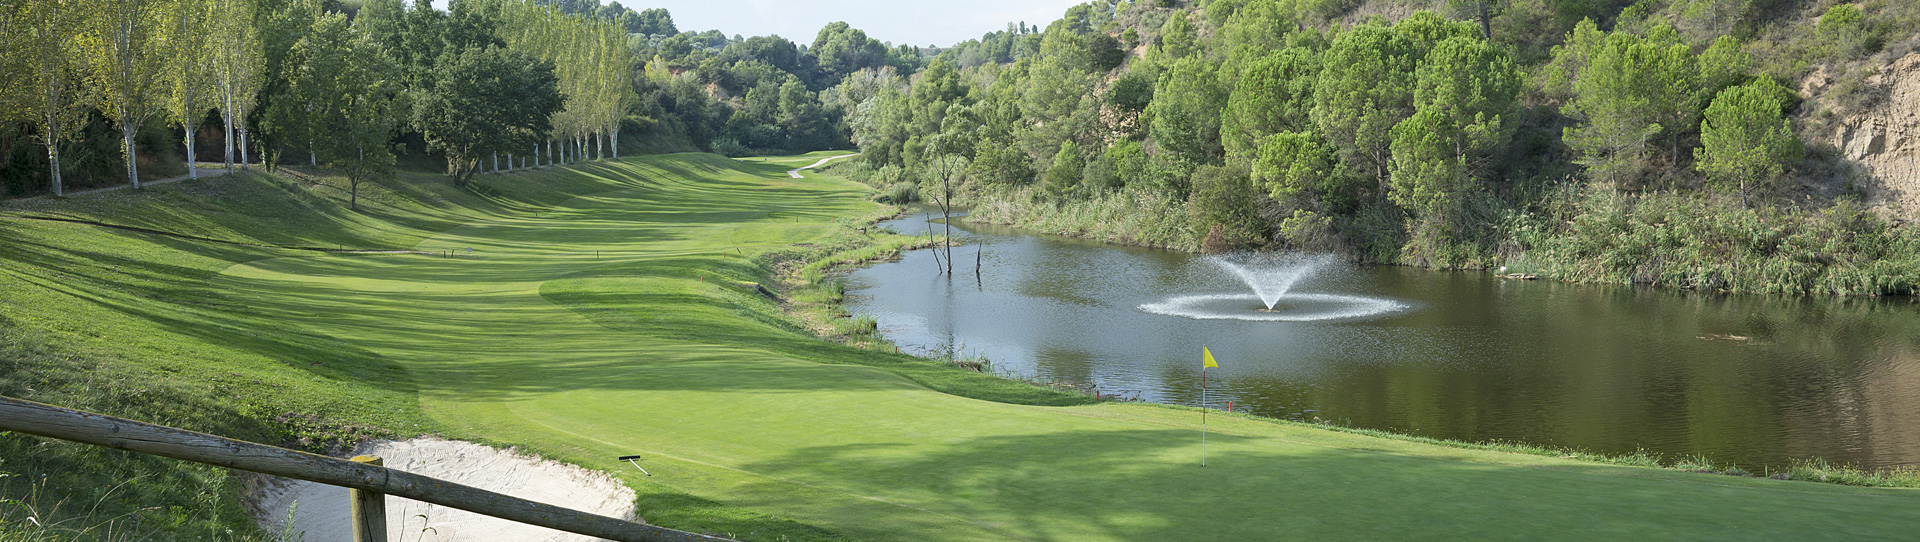 Spain golf courses - Club Golf Barcelona - Photo 2